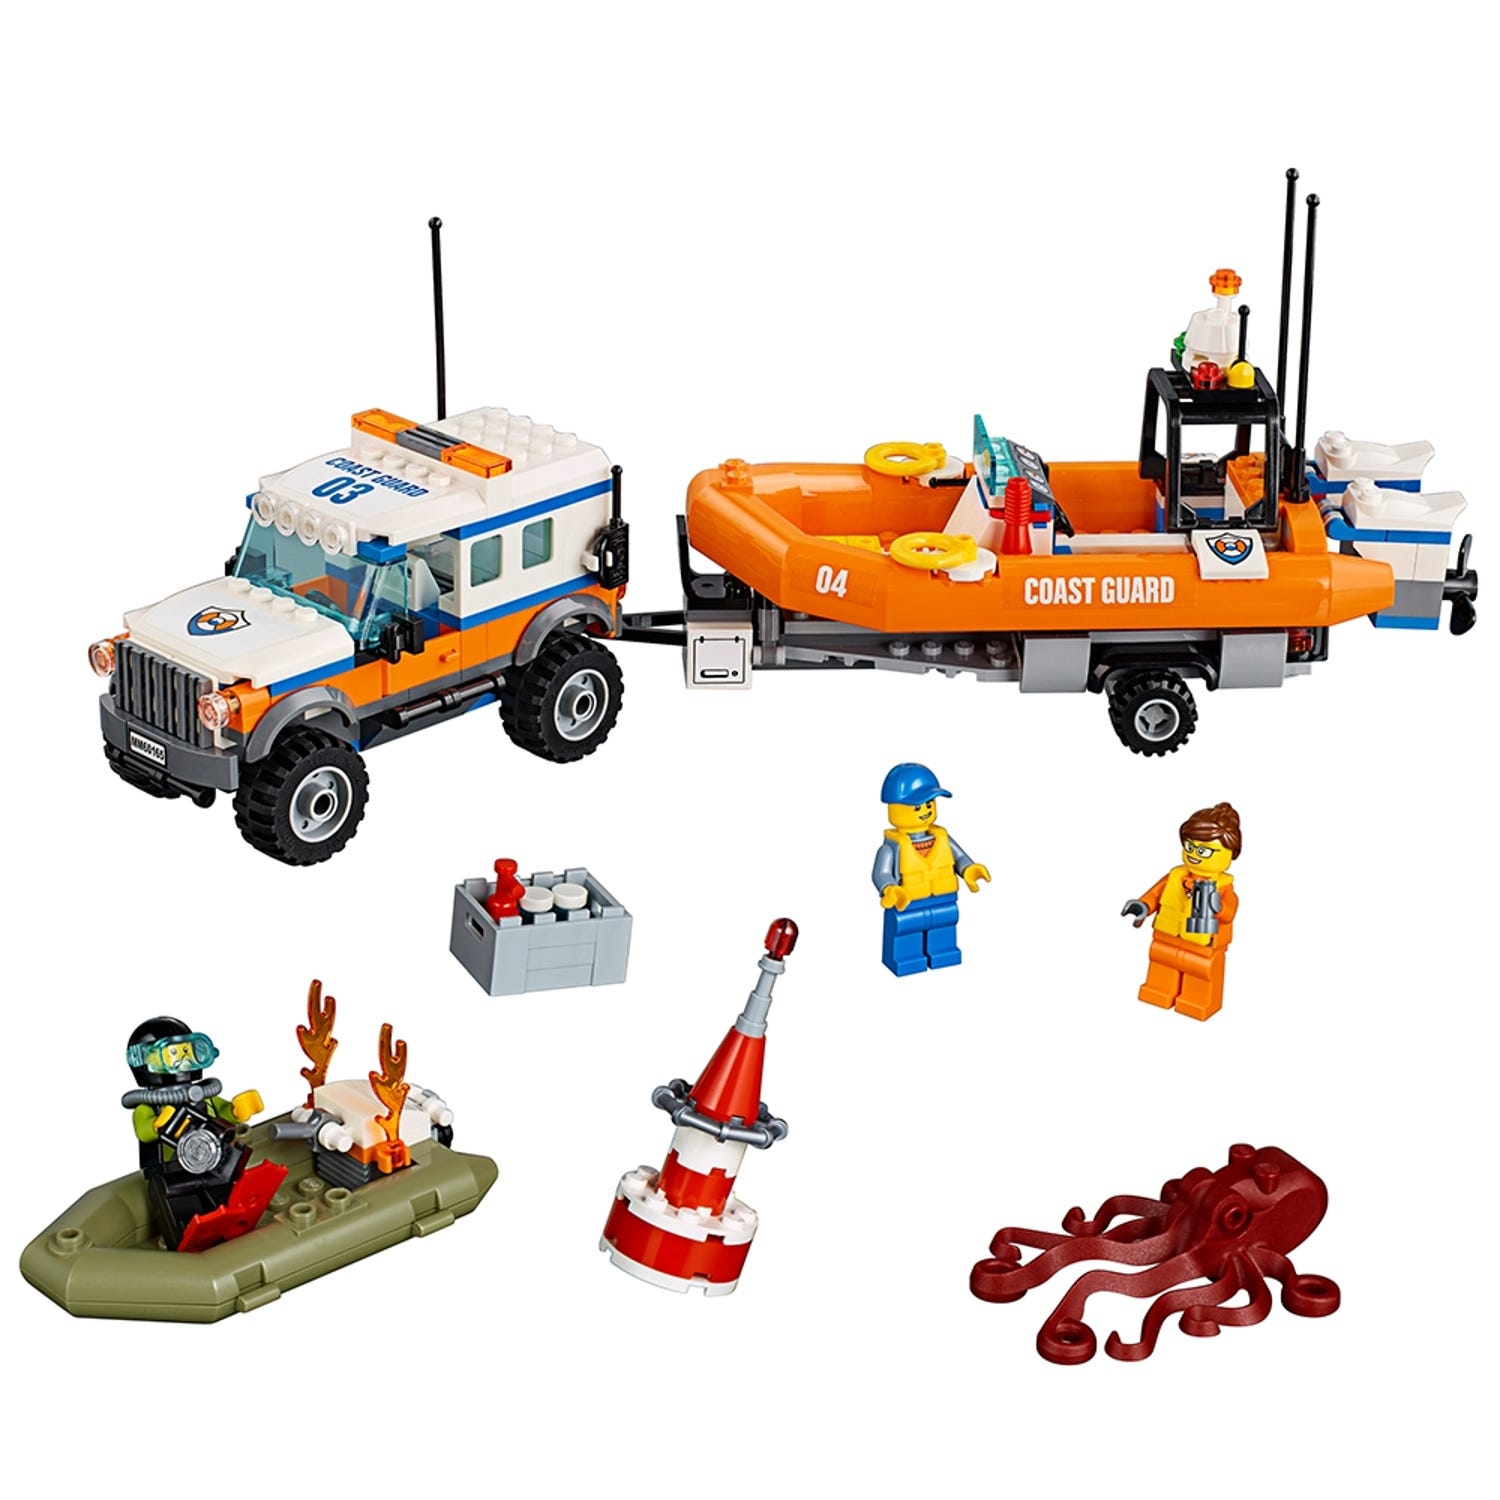 Sada undtagelse Kunstneriske 4 x 4 Response Unit 60165 | City | Buy online at the Official LEGO® Shop US